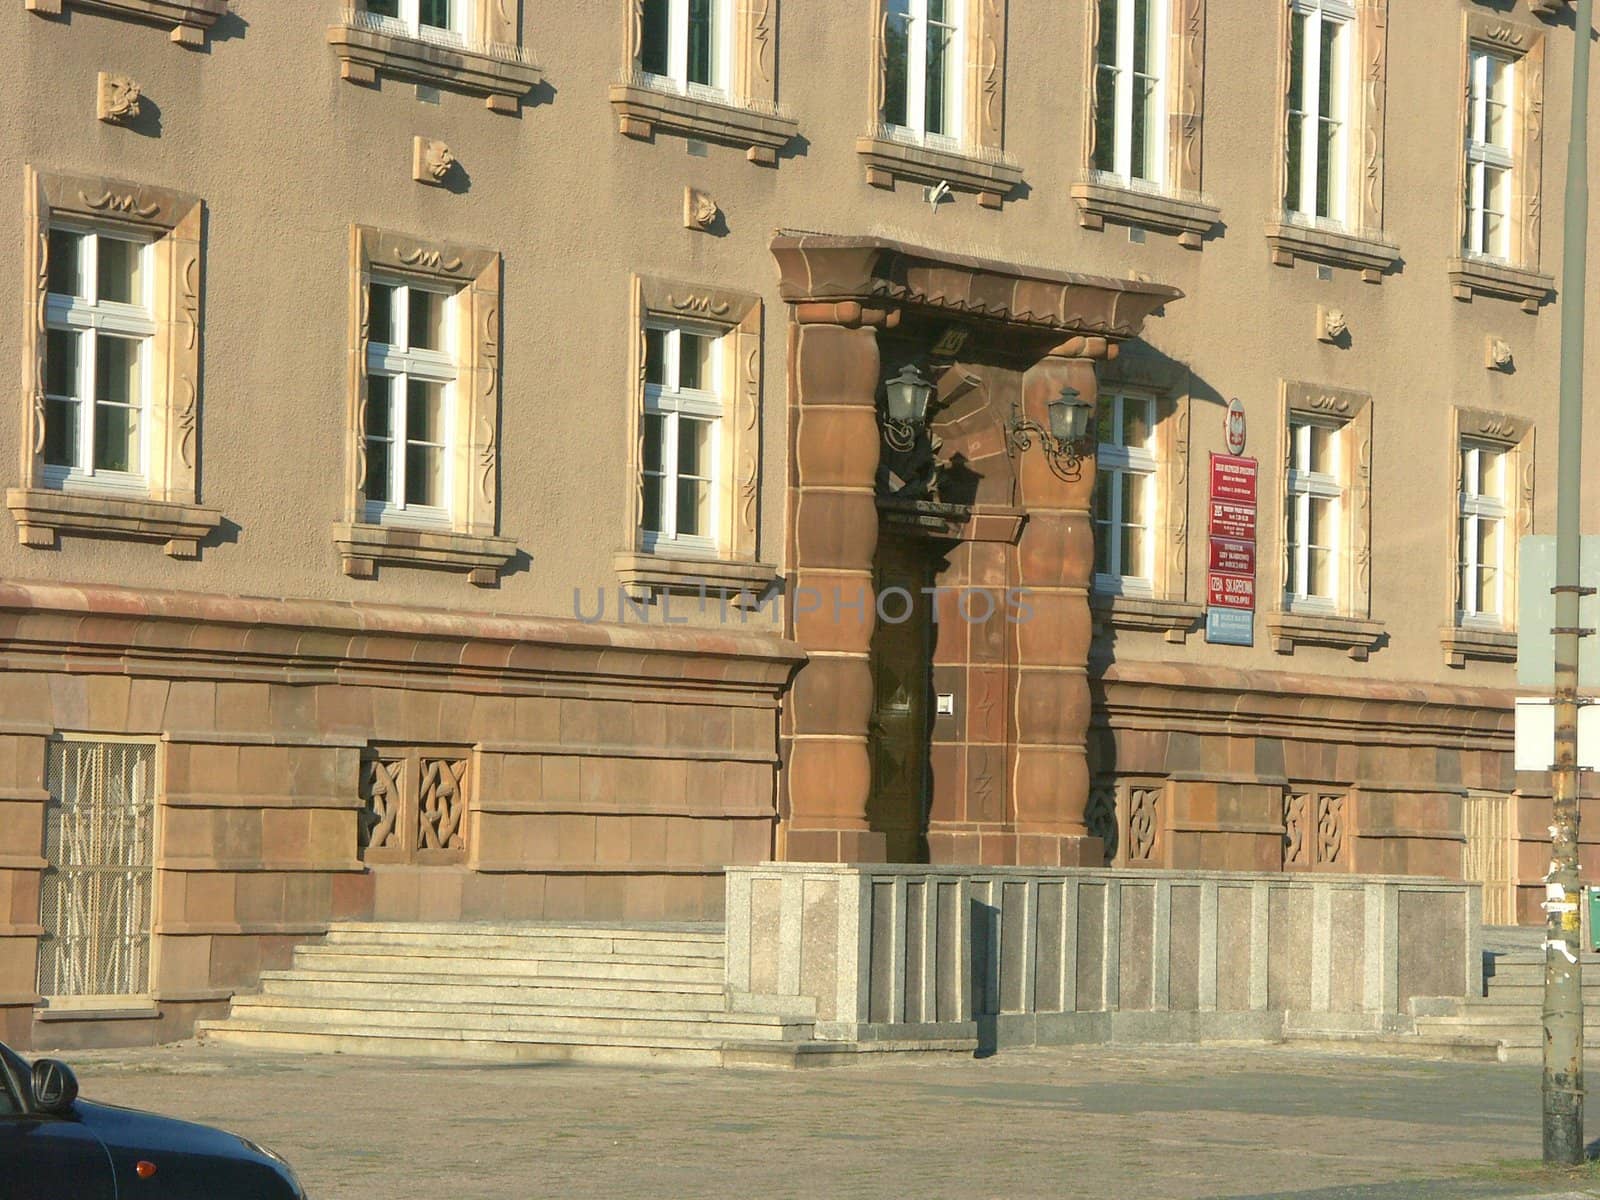 Social insurance institution in Wroclaw by wojciechkozlowski